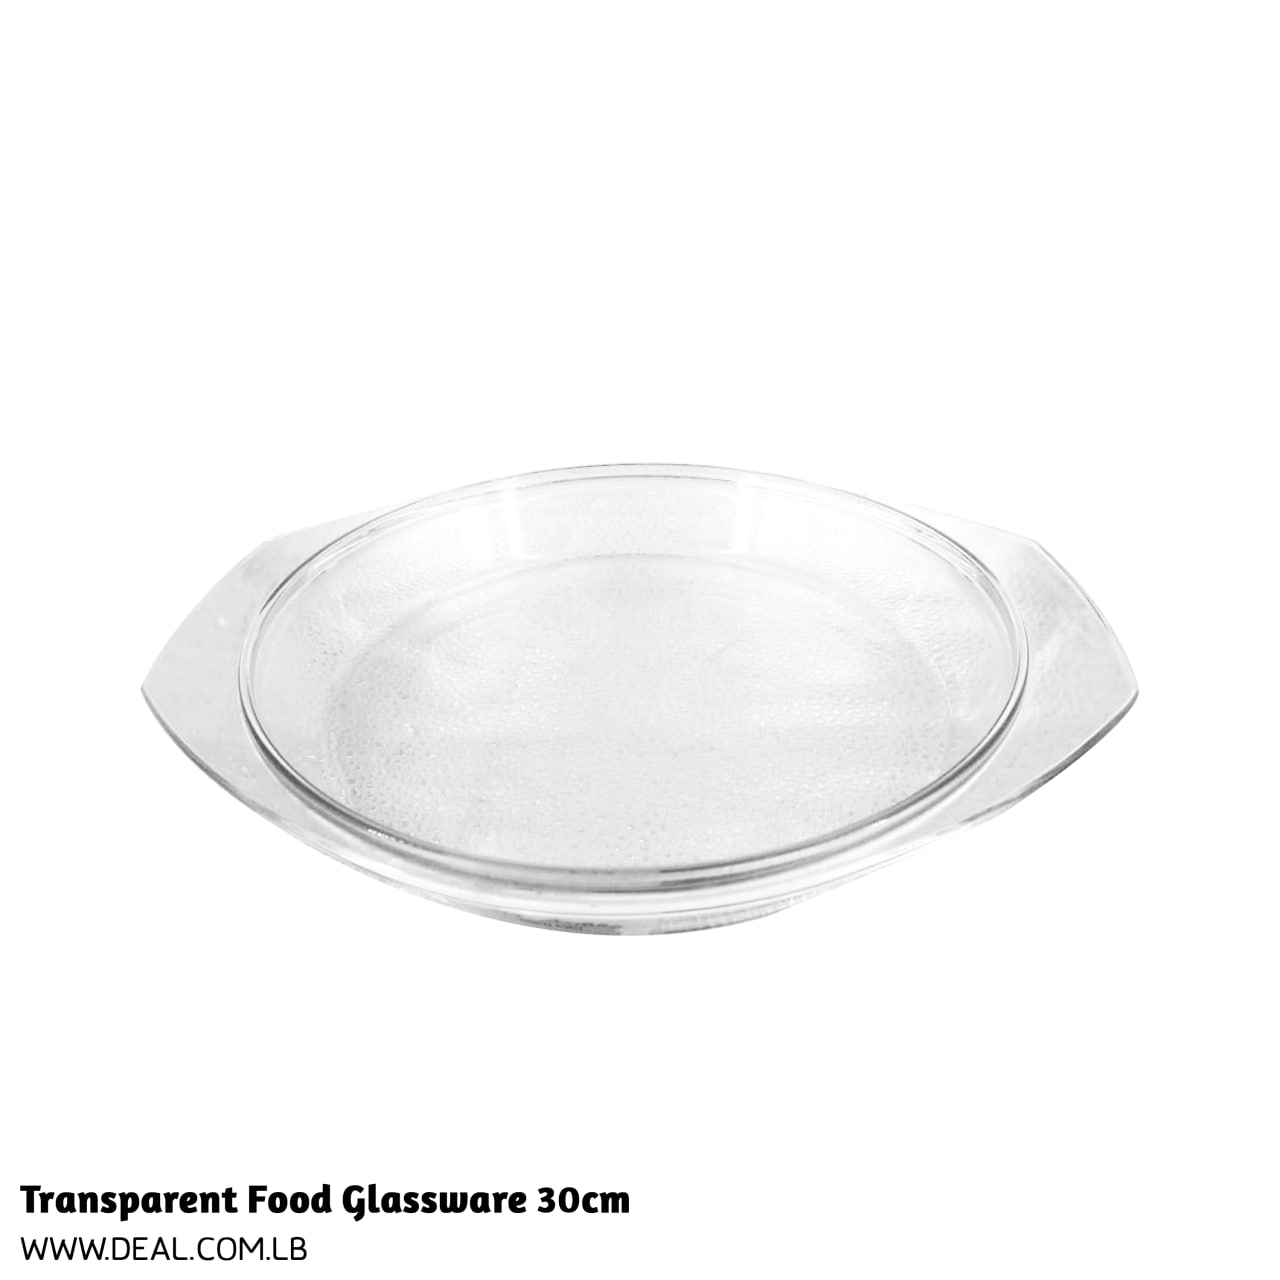 Transparent Food Glassware 30cm